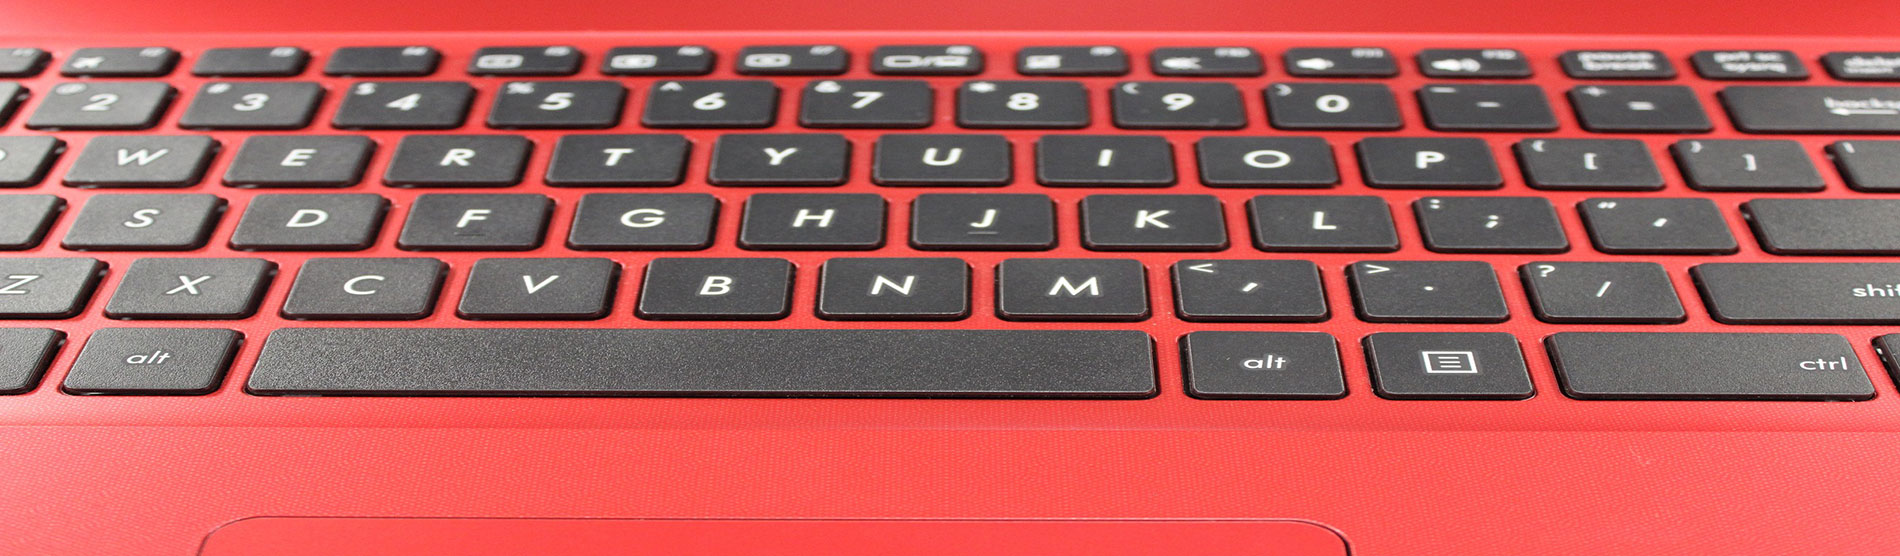 Red Laptop Keyboard